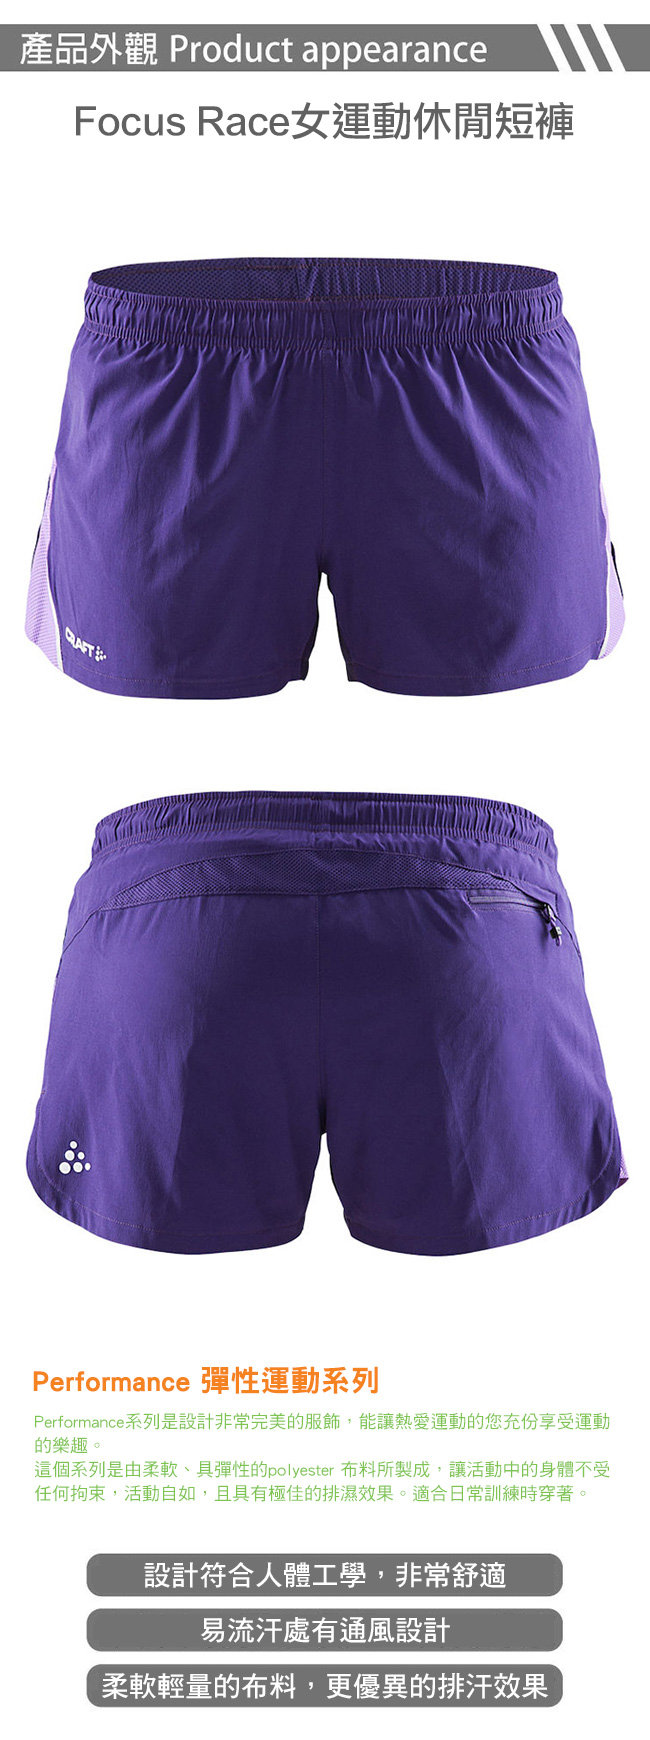 【瑞典CRAFT】女 Focus Race運動休閒短褲『紫』1903207